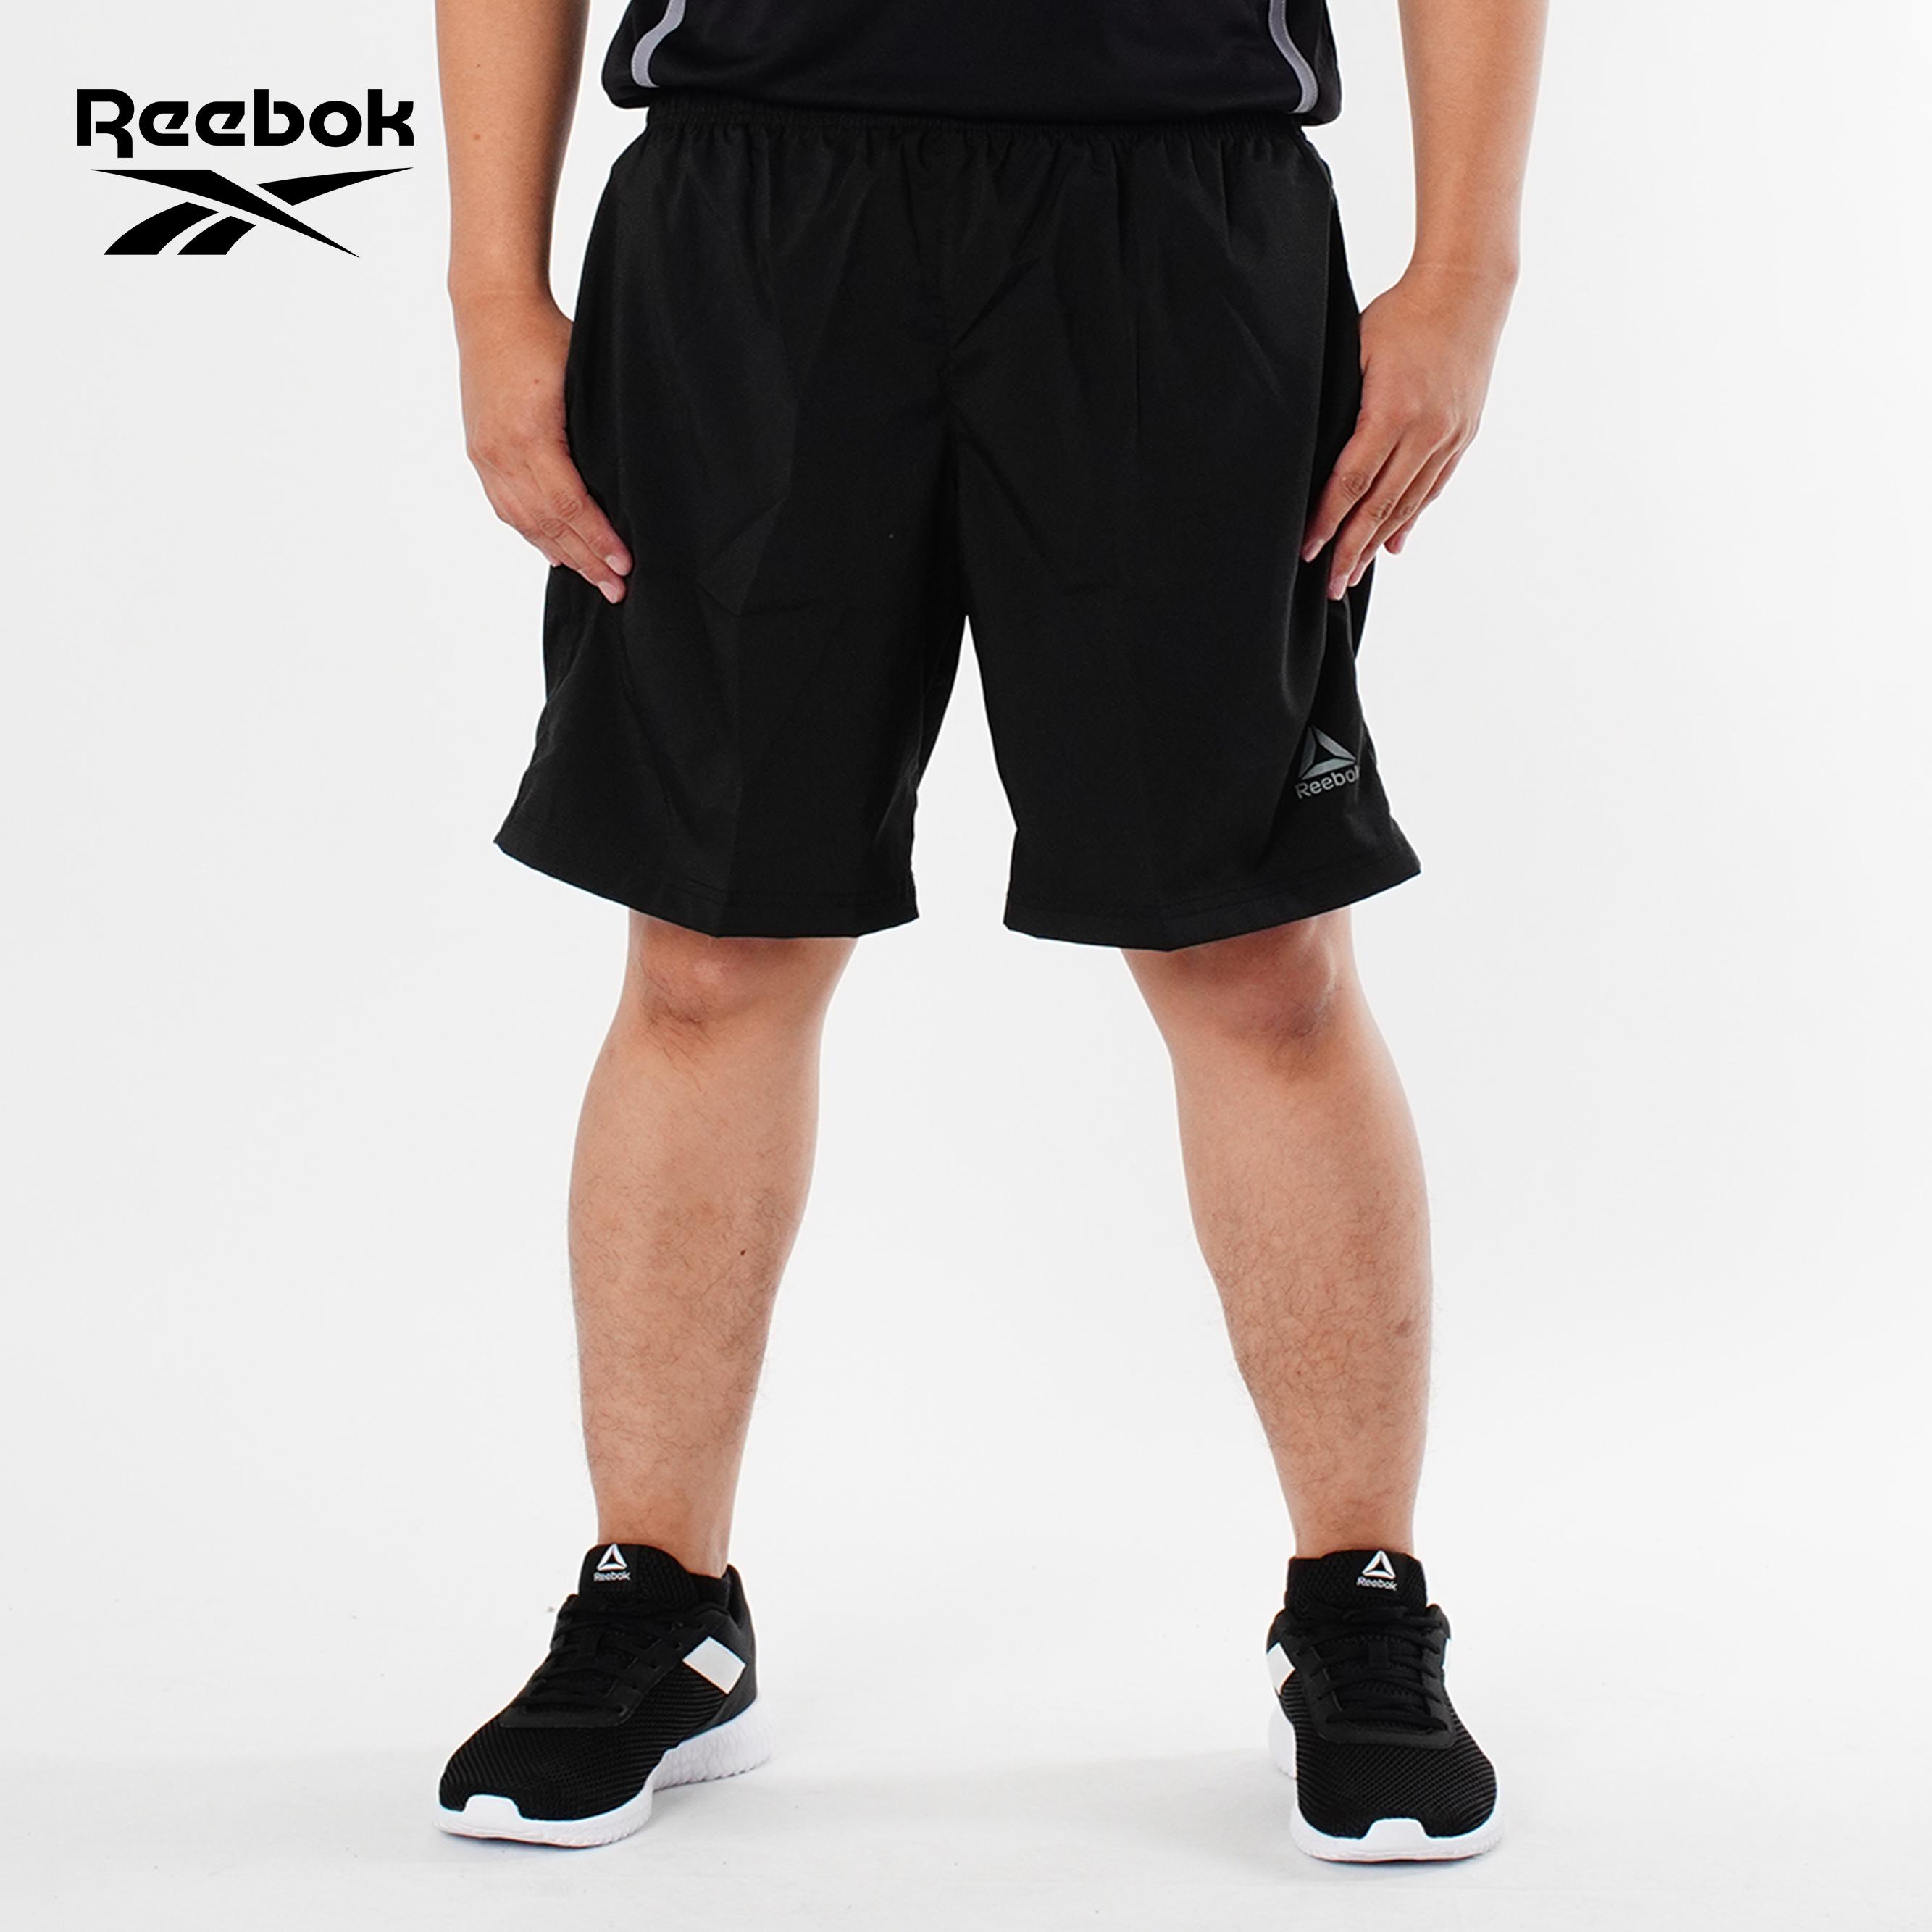 reebok shorts cheap